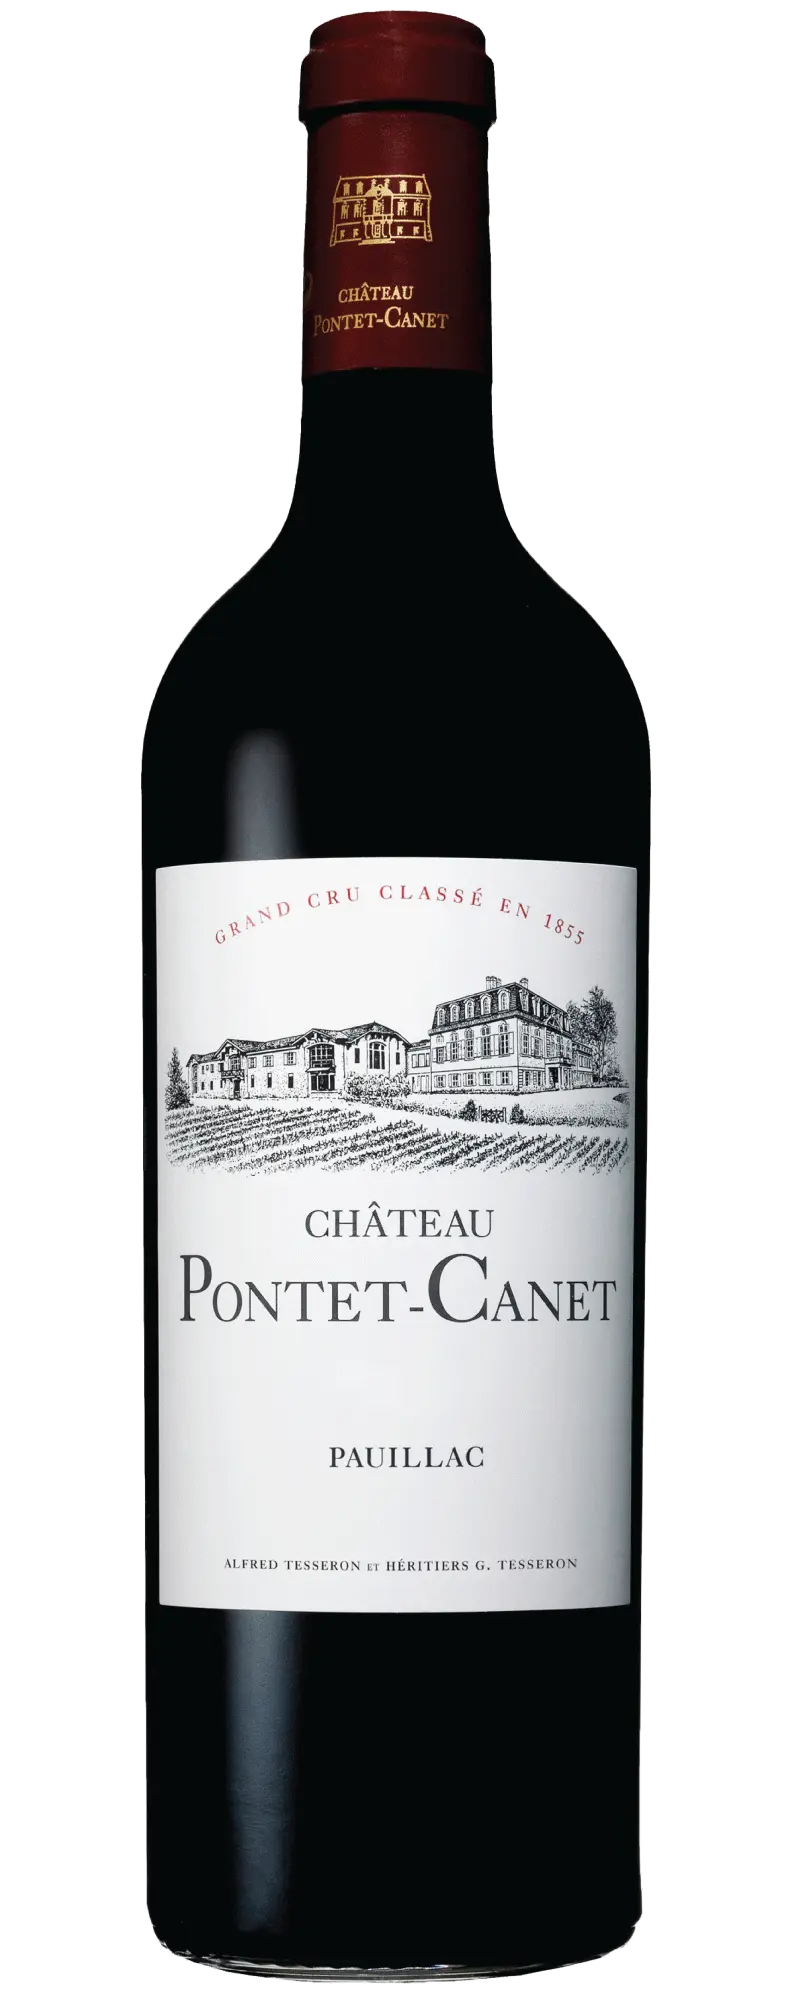 Chateau Pontet Canet 2009 (1x75cl) - TwoMoreGlasses.com